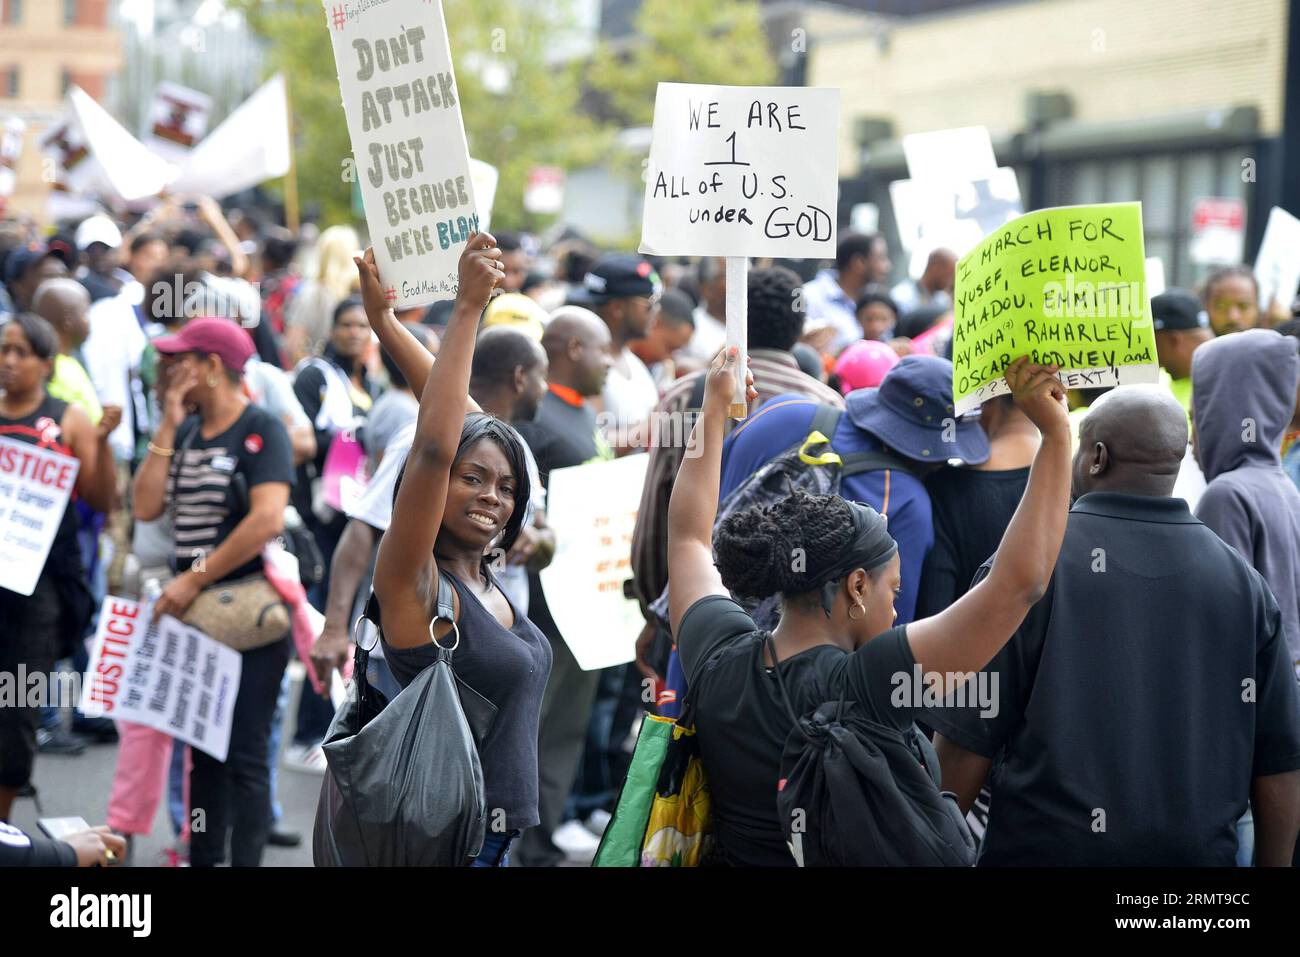 Am 23. August 2014 demonstrierten die Menschen mit Plakaten gegen die Ermordung der Polizei auf der Staten Island in New York. Tausende marschierten friedlich am Samstag auf der Staten Island in New York, protestierten gegen die Ermordung von Eric Garner durch die Polizei von New York City und äußerten sich zu ähnlichen Sorgen der schwarzen Gemeinden von Ferguson. ) (Zjy) US-NEW YORK-PROTEST WangxLei PUBLICATIONxNOTxINxCHN Prominente Halten Plakate, um gegen Polizeimorde in New York S Staten Island zu protestieren die Vereinigten Staaten AM 23. August 2014 marschierten Tausende in New York S Staten Island Samstag gegen die Ermordung von Eric G Stockfoto